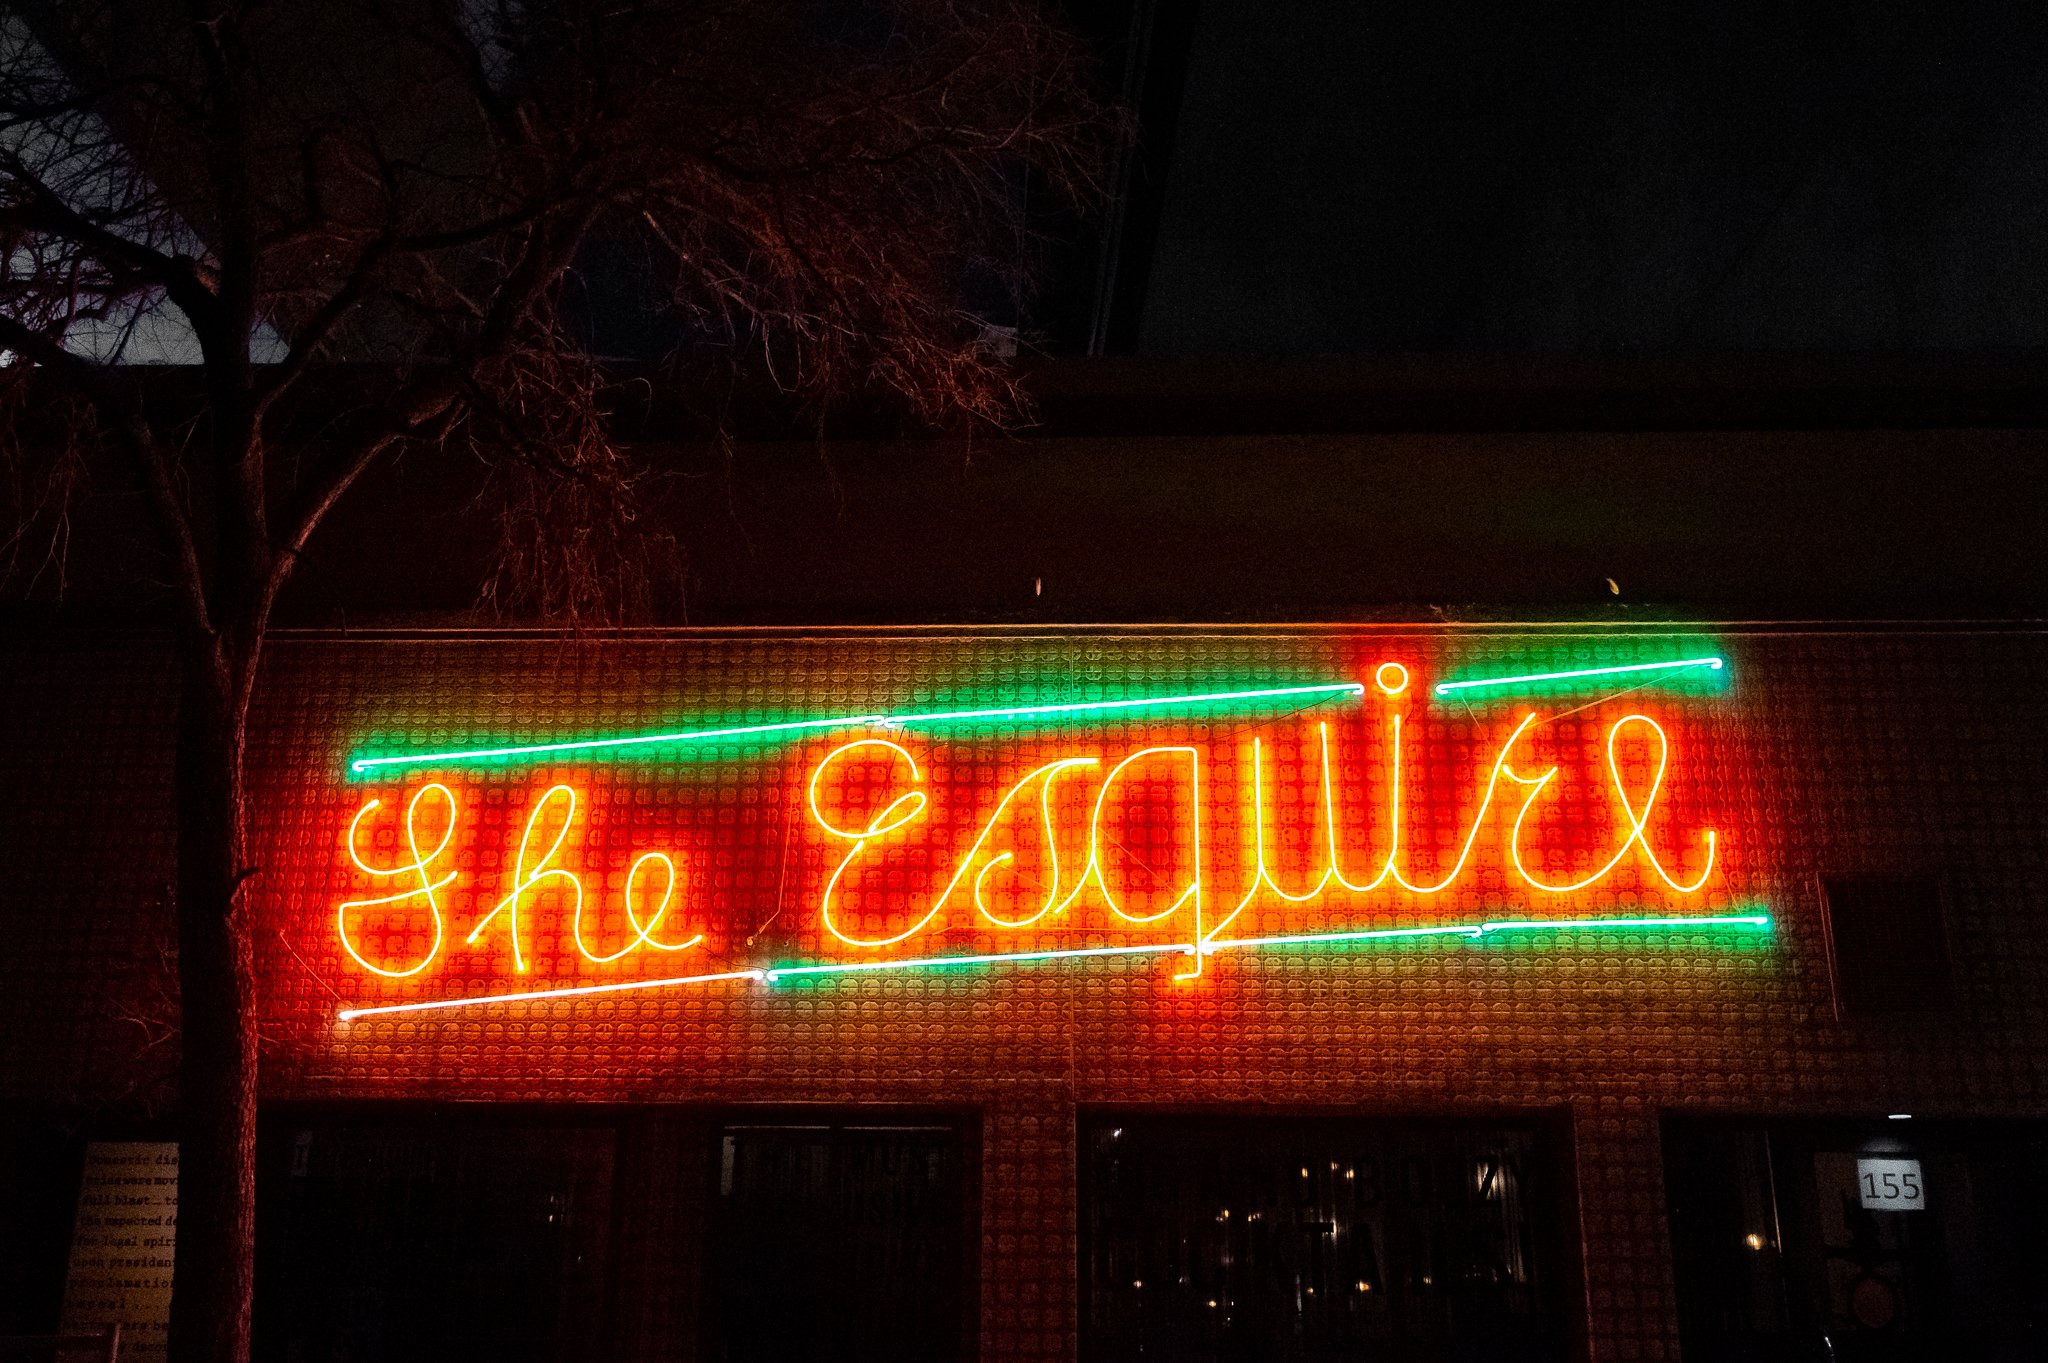 Exterior Sign of The Esquire Tavern in San Antonio